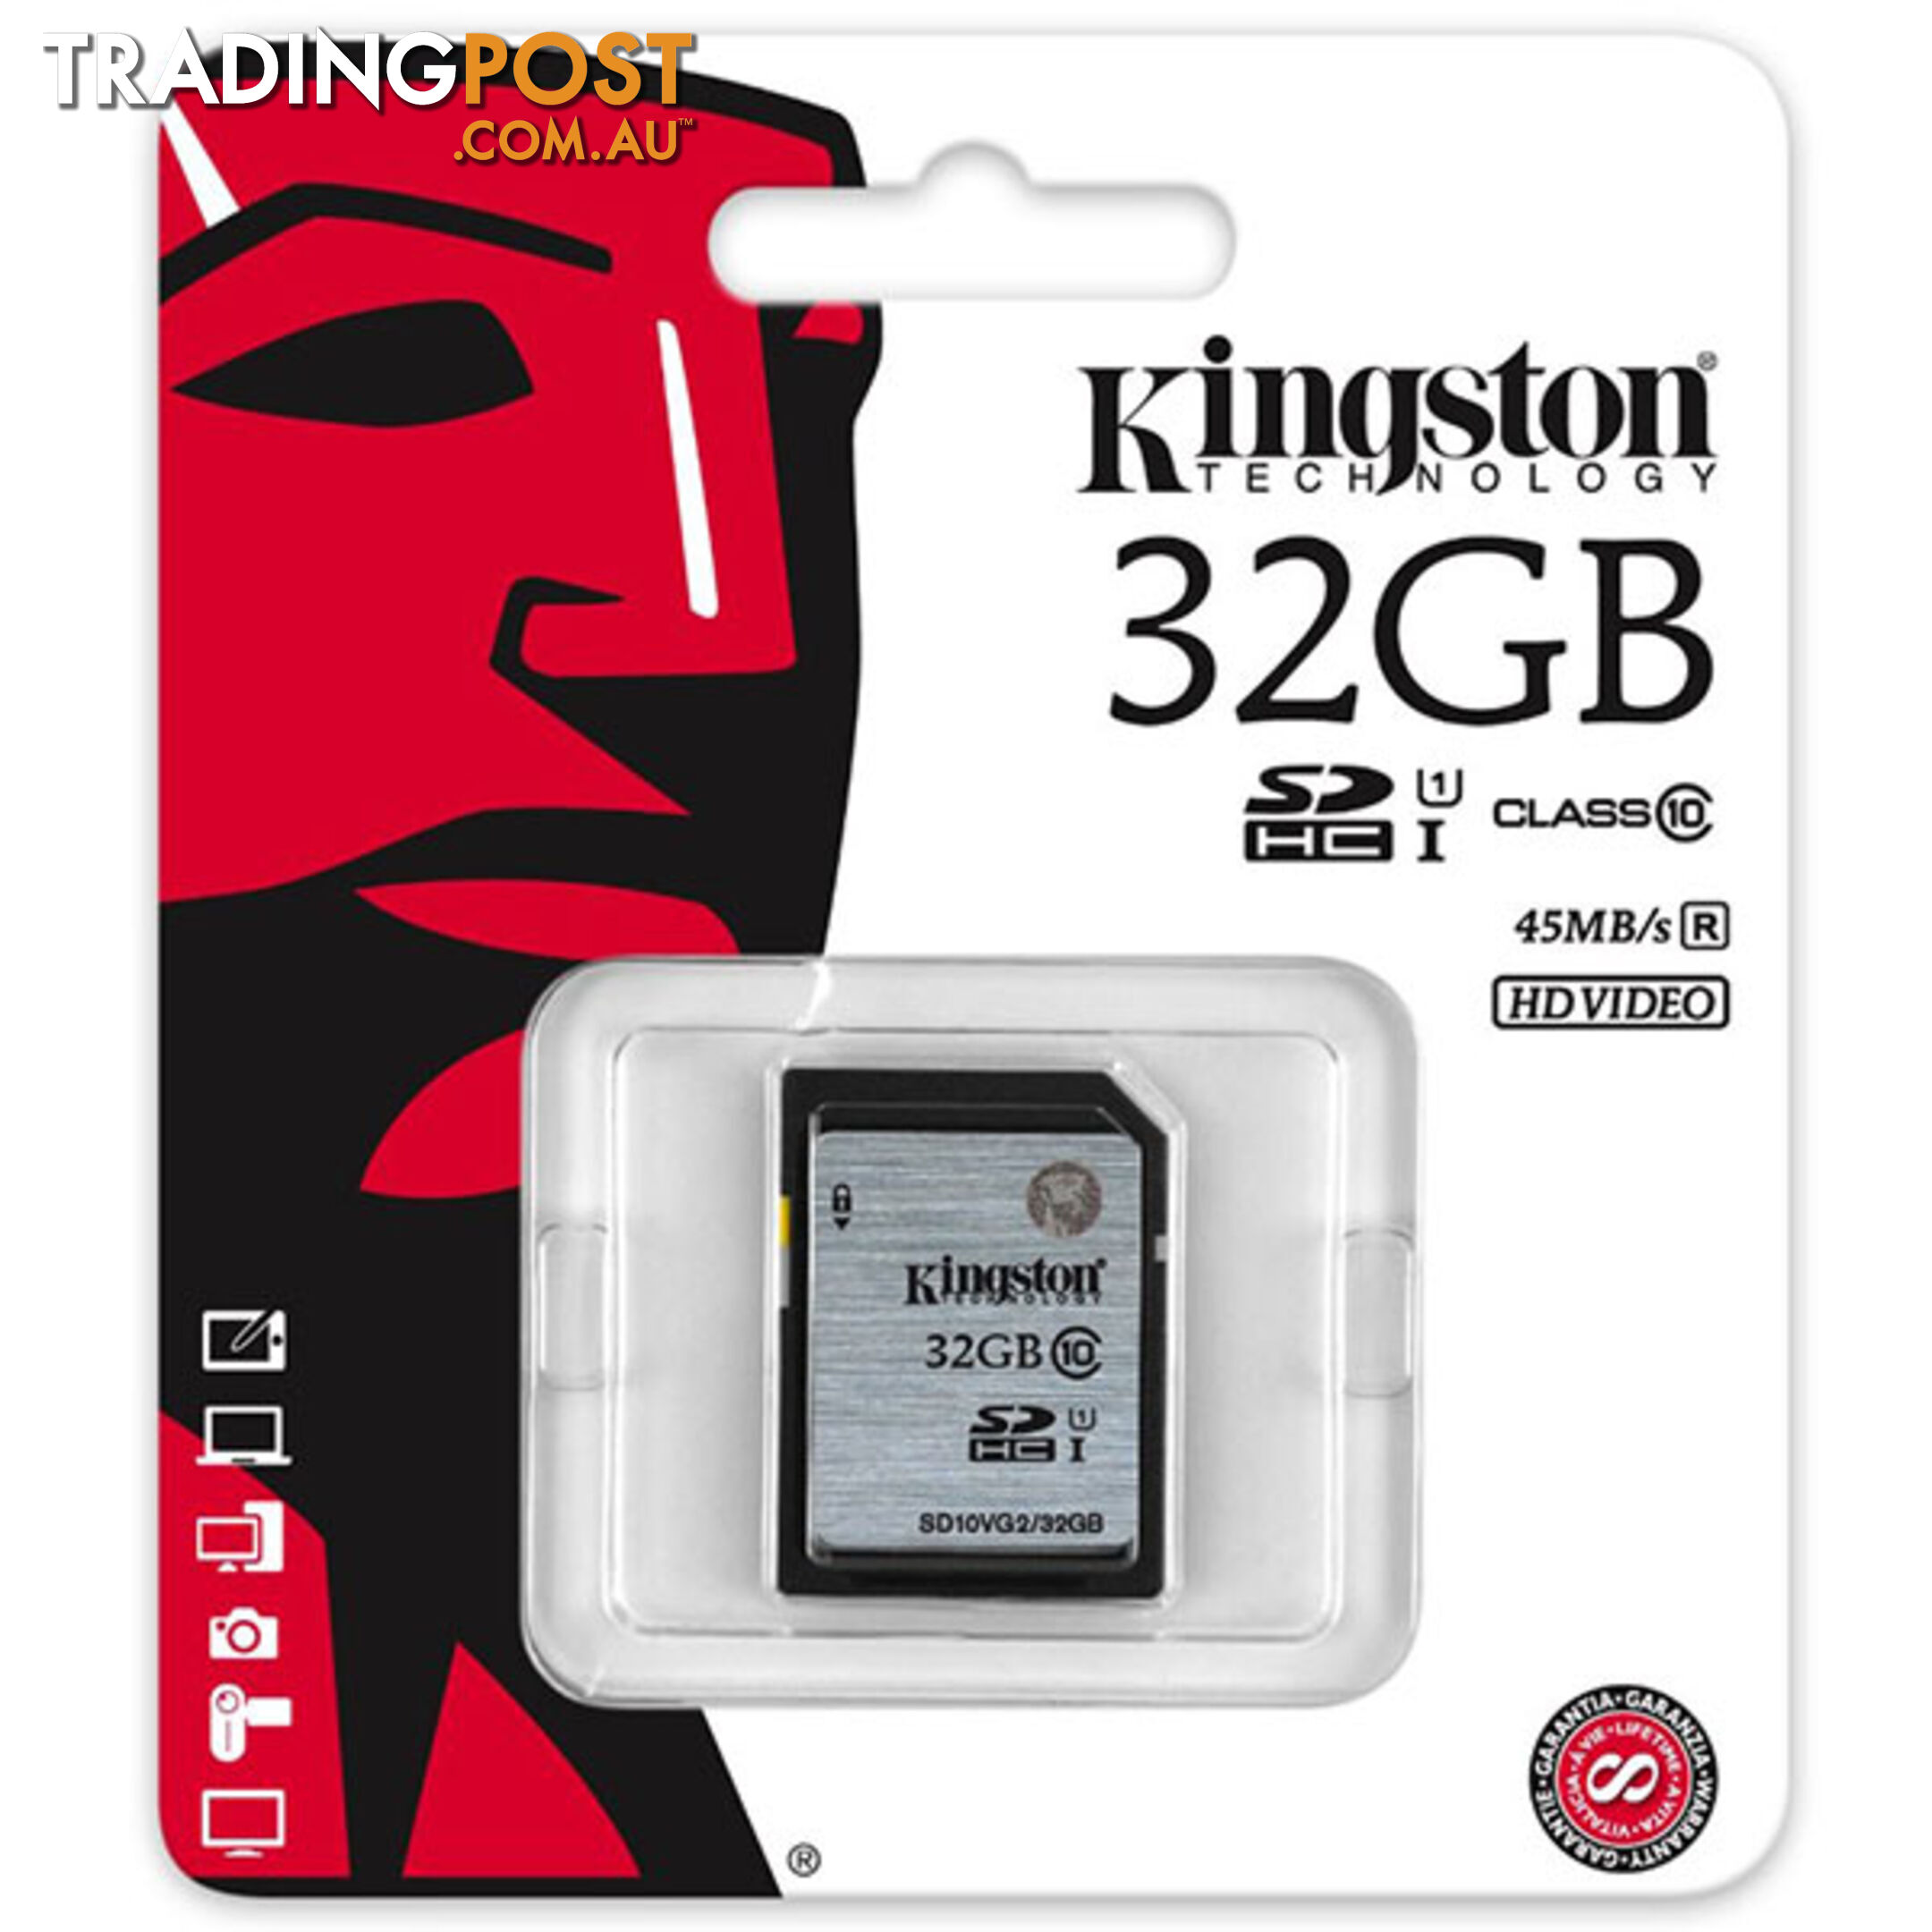 KINGSTON 32GB SDHC Class10 UHS-I 80MB/s Read Flash Card  Retail(SD10VG2/32GBFR)